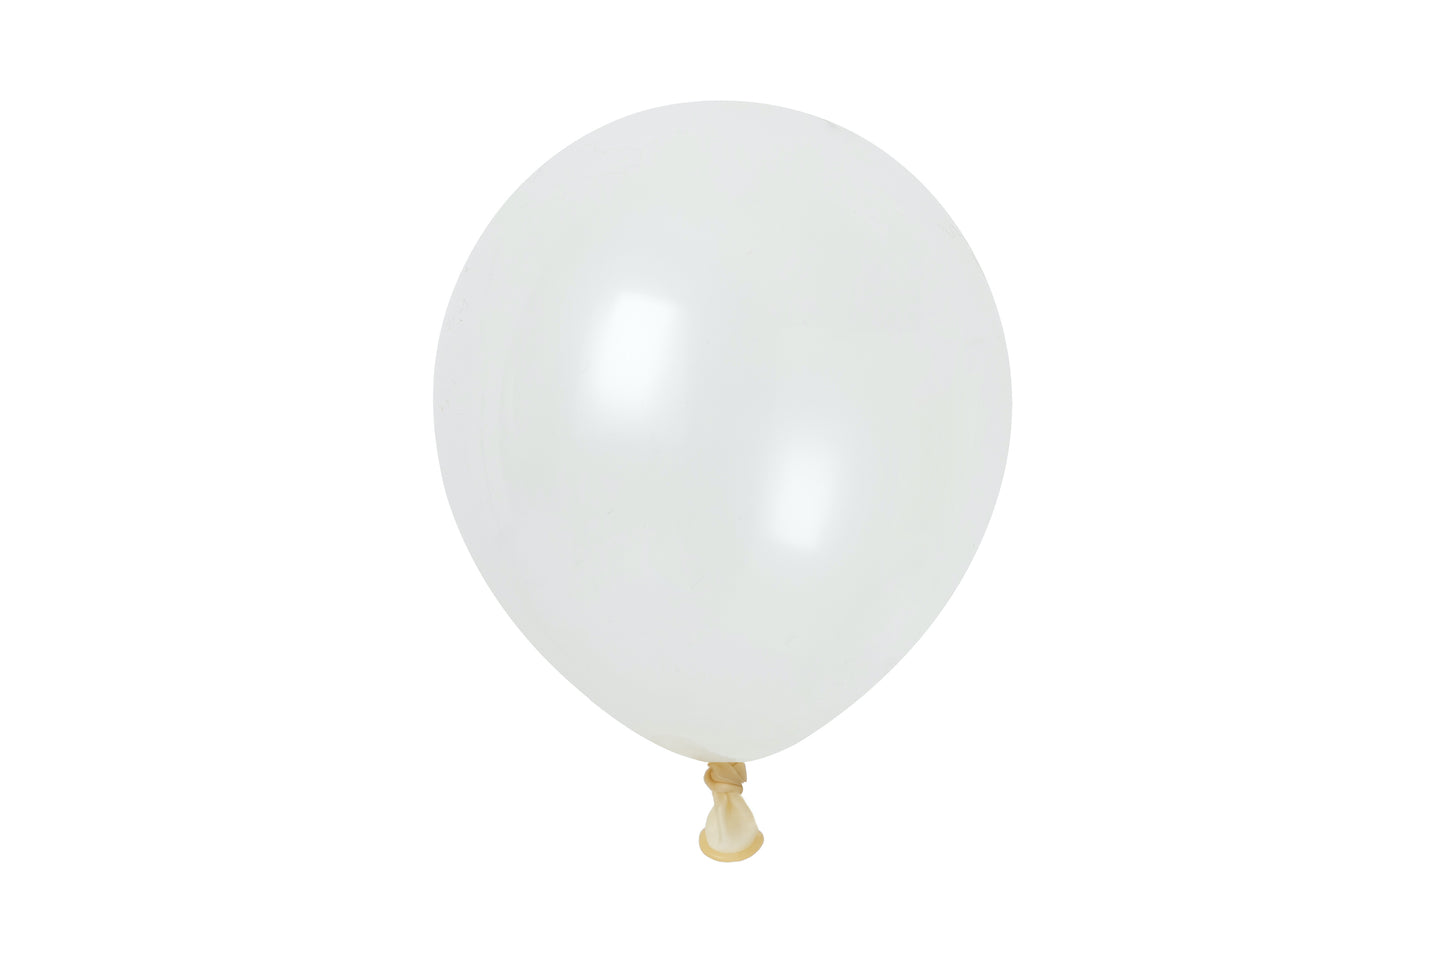 Winntex Premium 5" Latex Balloon - Clear - 100ct